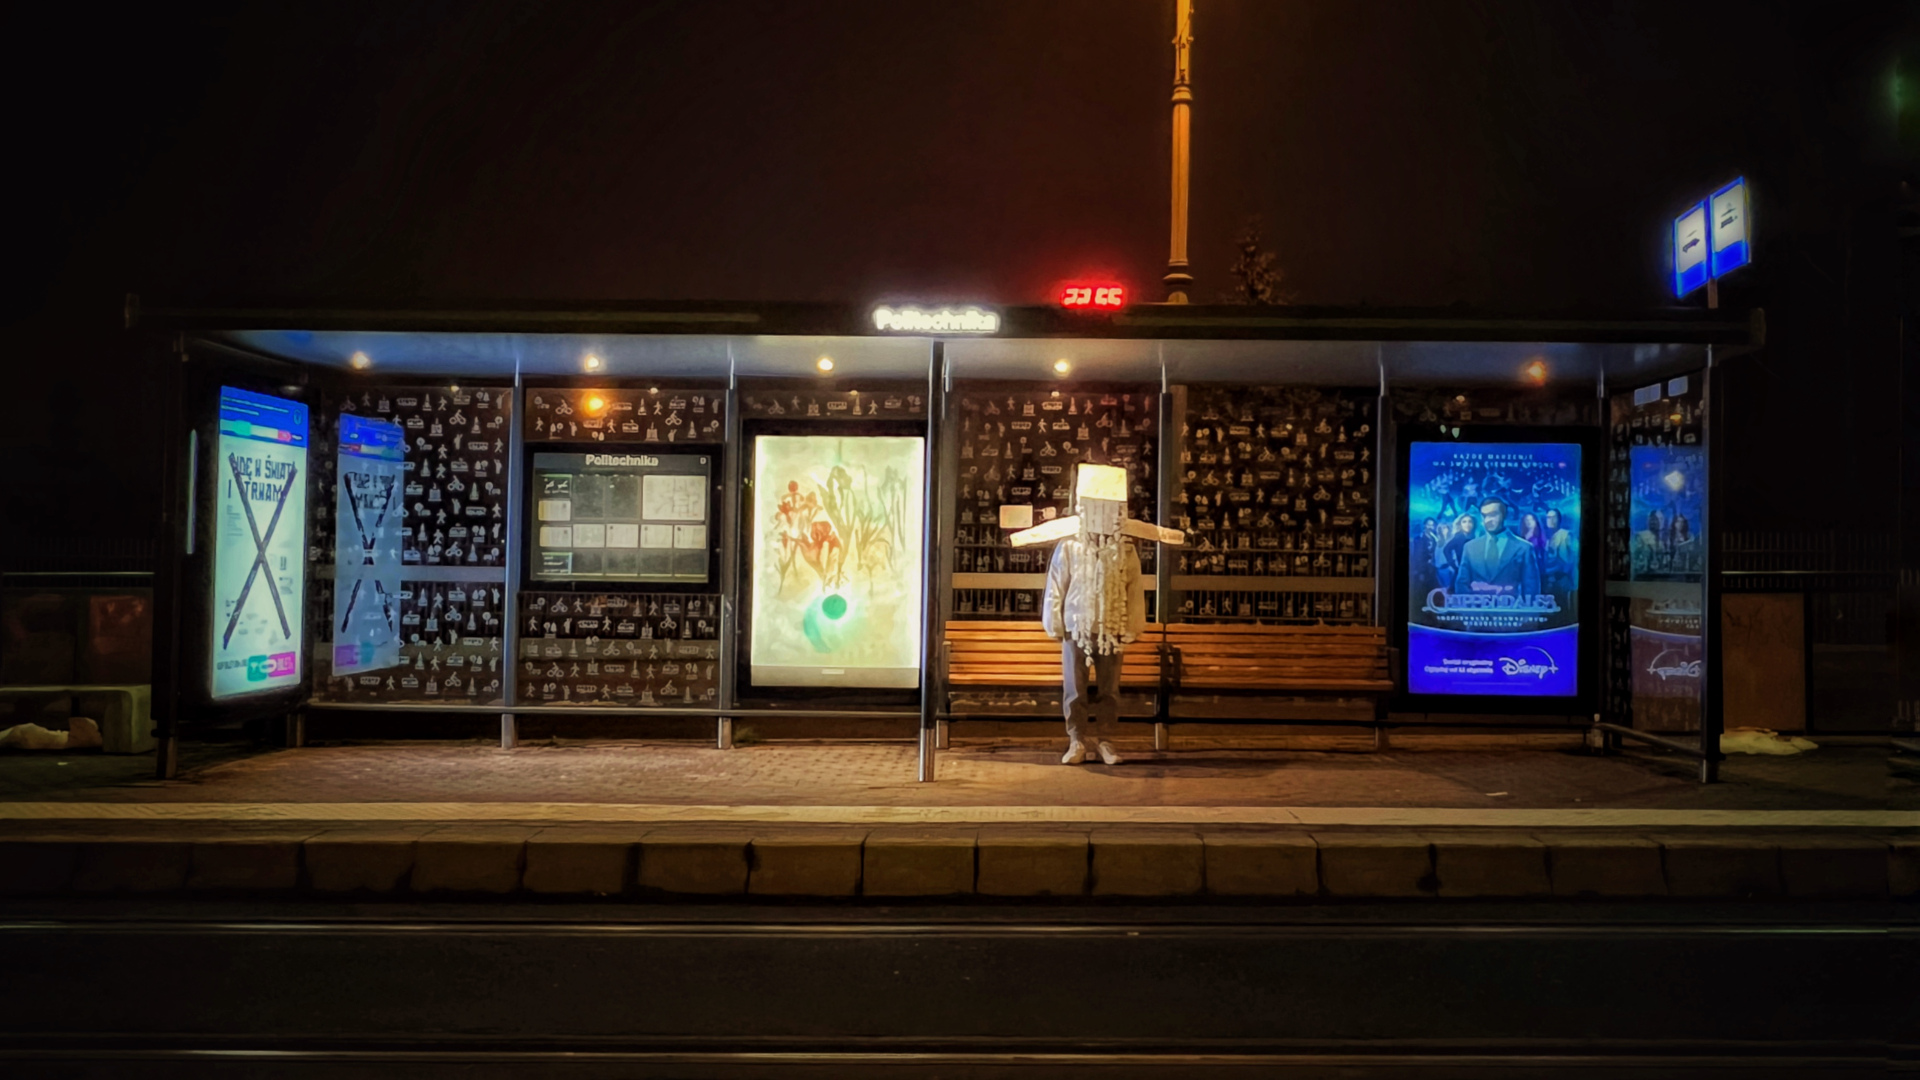 zdjęcie przedstawia postać ubraną w białą papierową koronę w formie hełmu. Postać stoi na przystanku autobusowym w nocy